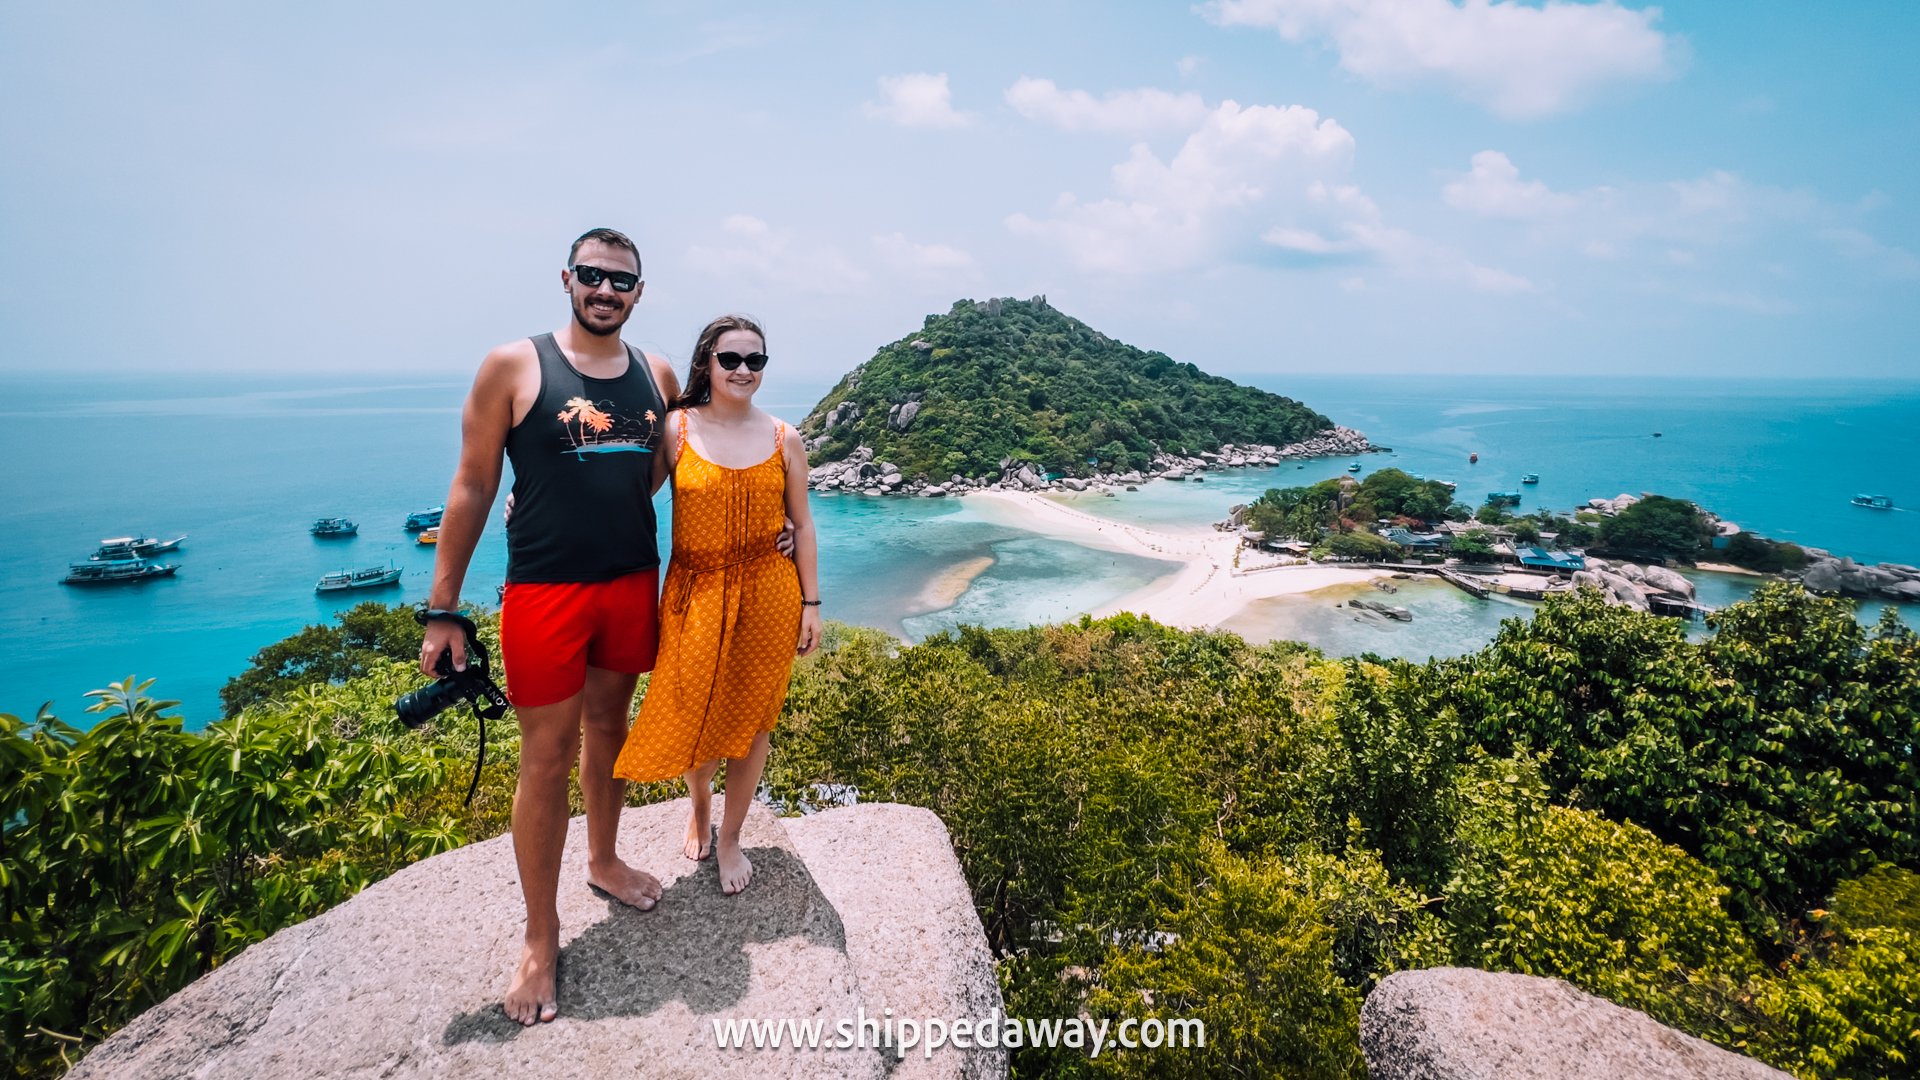 Couple posing on top of the rock at Koh Nang Yuan island viewpoint, Koh Tao, Thailand